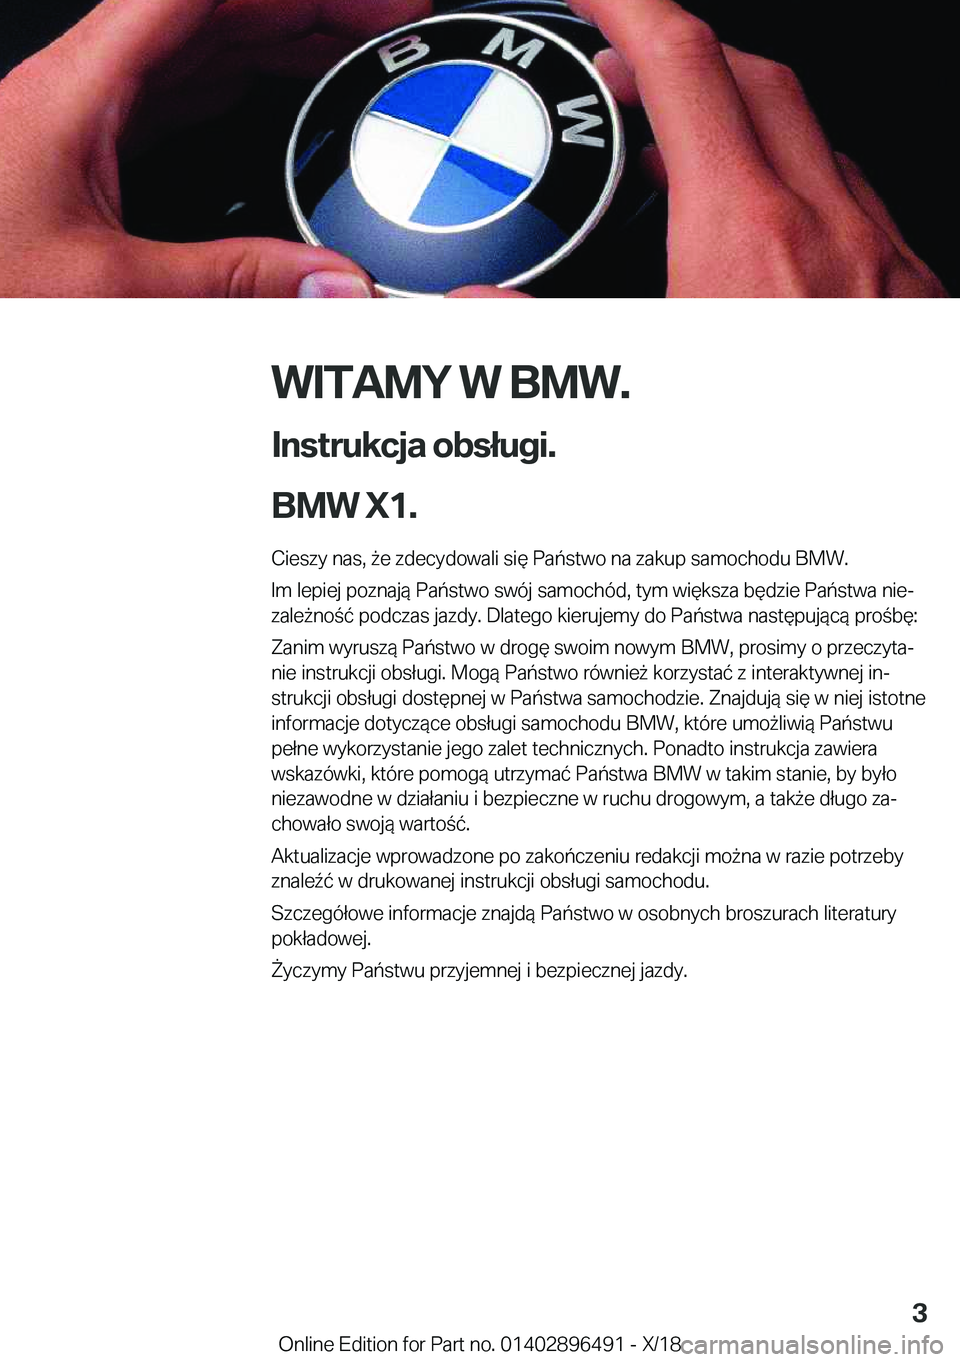 BMW X1 2019  Instrukcja obsługi (in Polish) �W�I�T�A�M�Y��W��B�M�W�.
�I�n�s�t�r�u�k�c�j�a��o�b�s�ł�u�g�i�.
�B�M�W��X�1�. �C�i�e�s�z�y��n�a�s�,�9�e��z�d�e�c�y�d�o�w�a�l�i��s�i�